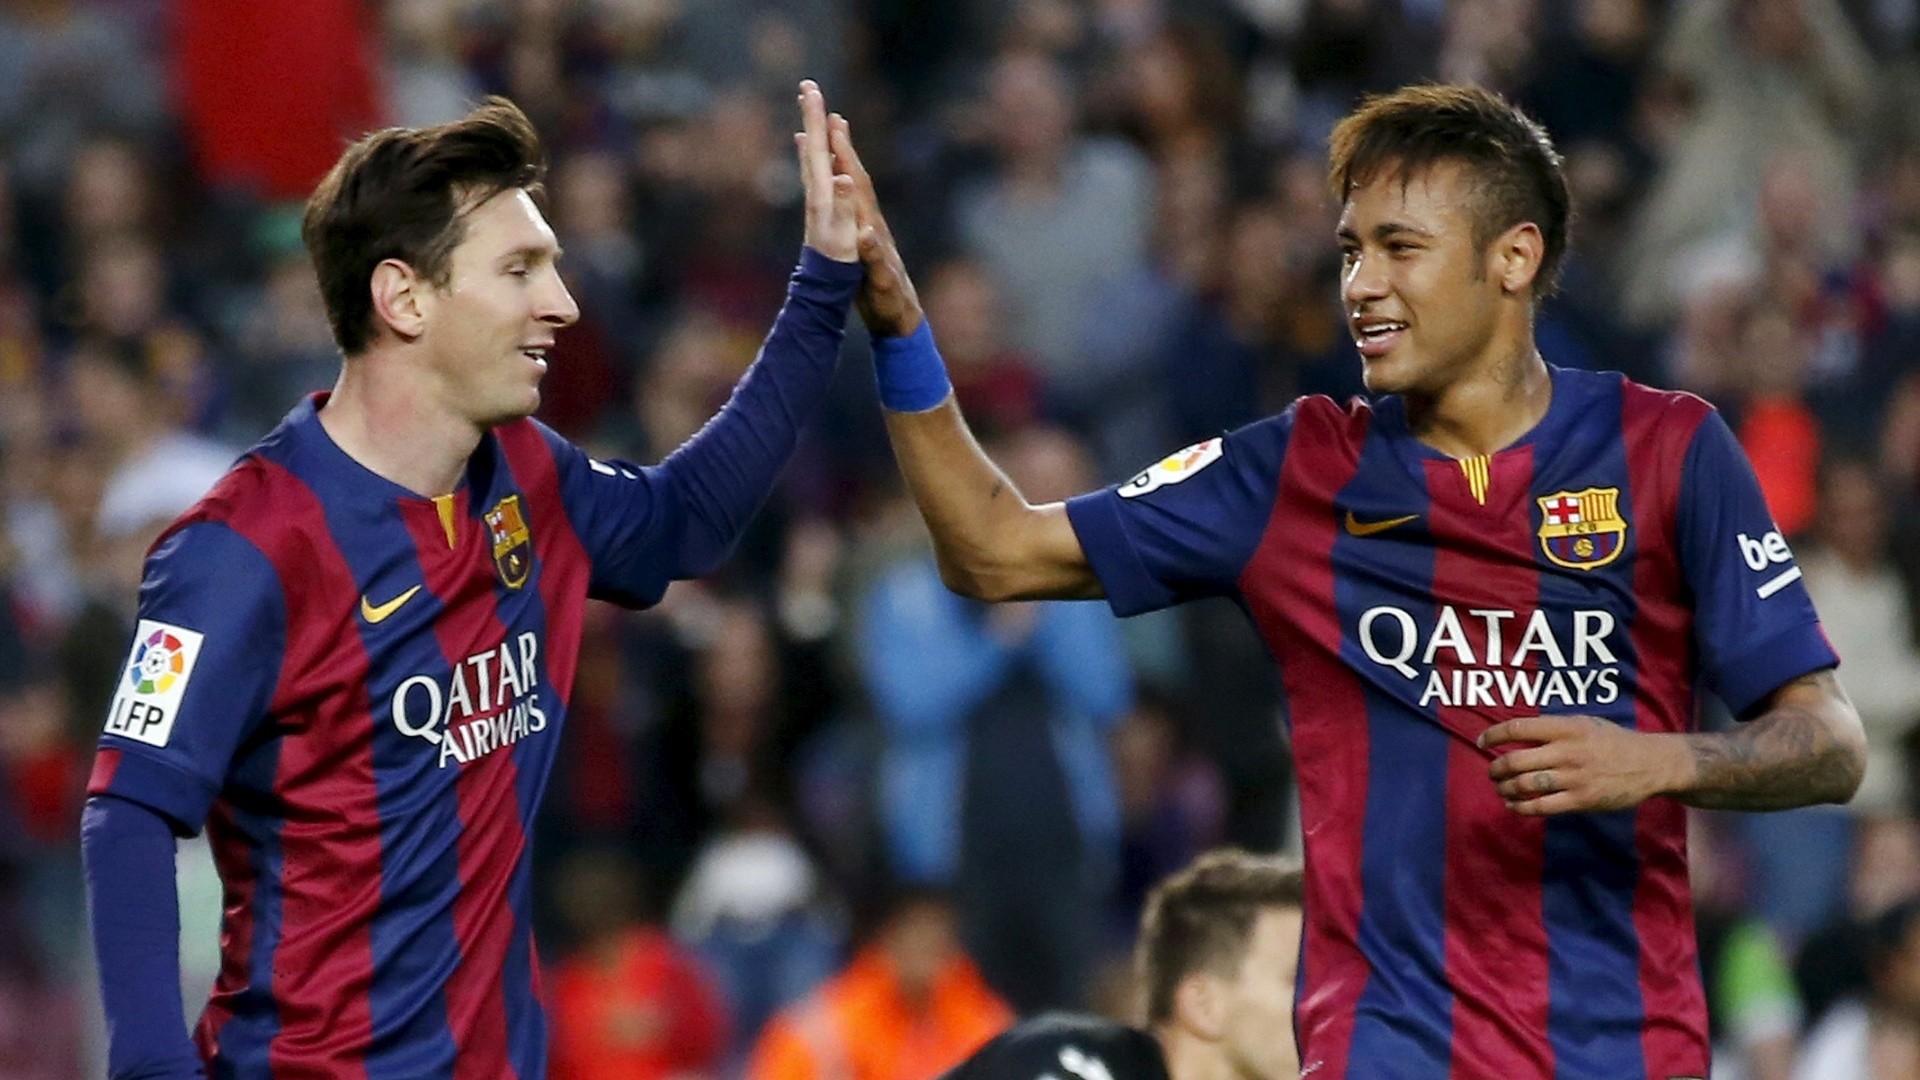 Hãy để hình ảnh Barcelona Lionel Messi và Neymar đem tới niềm vui cho trái tim bạn. Hình nền này sẽ đưa bạn đến với cảm giác thăng hoa khi mỗi lần hiện ra trên màn hình điện thoại. Hãy cùng đón chào bộ sưu tập hình nền đầy đủ của các ngôi sao Barca nhé.